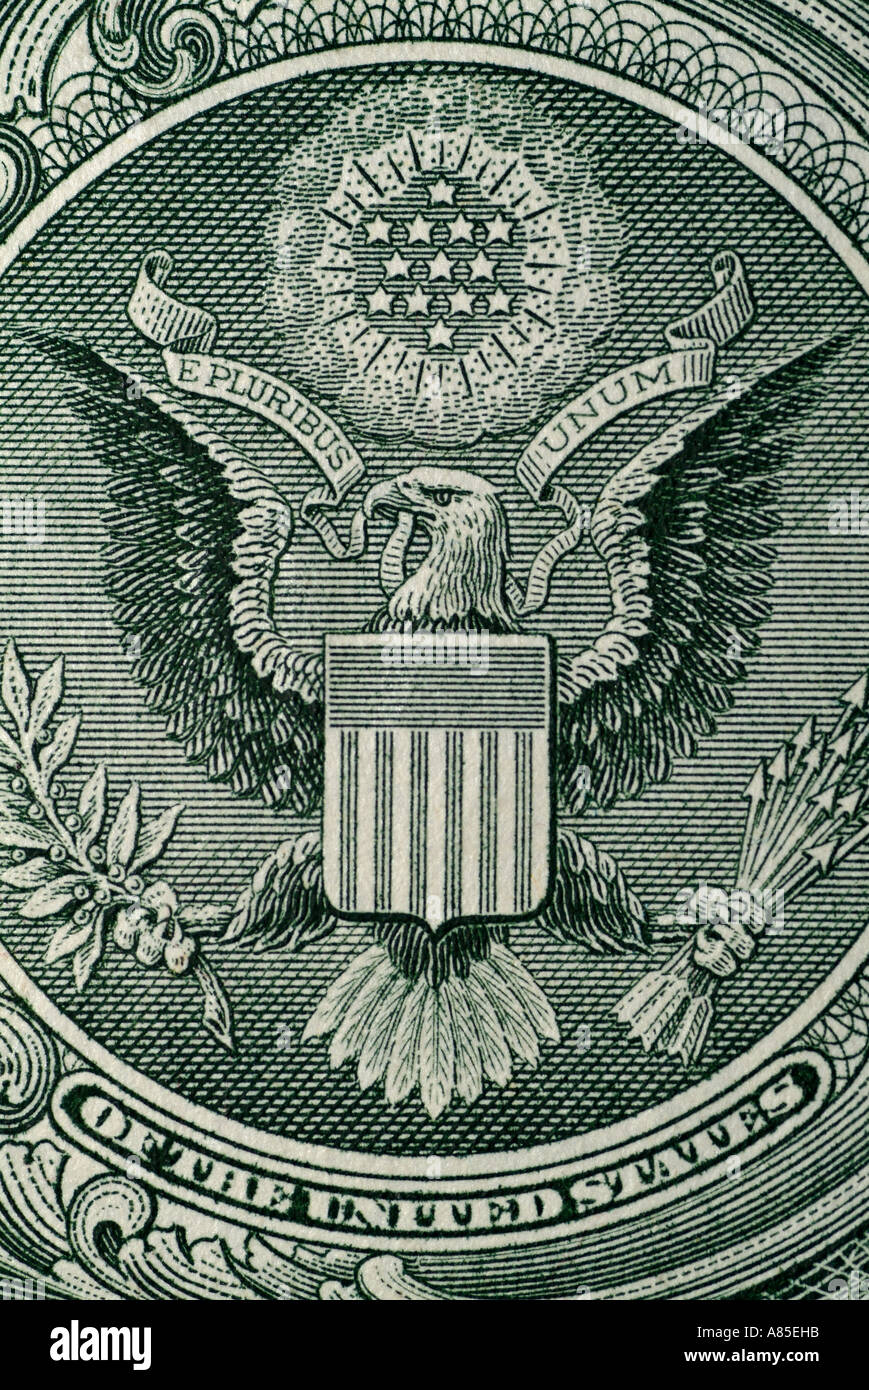 Résumé de l'arrière d'un Américain d'un Dollar US Remarque montrant le Grand Sceau des États-Unis d'Amérique Banque D'Images